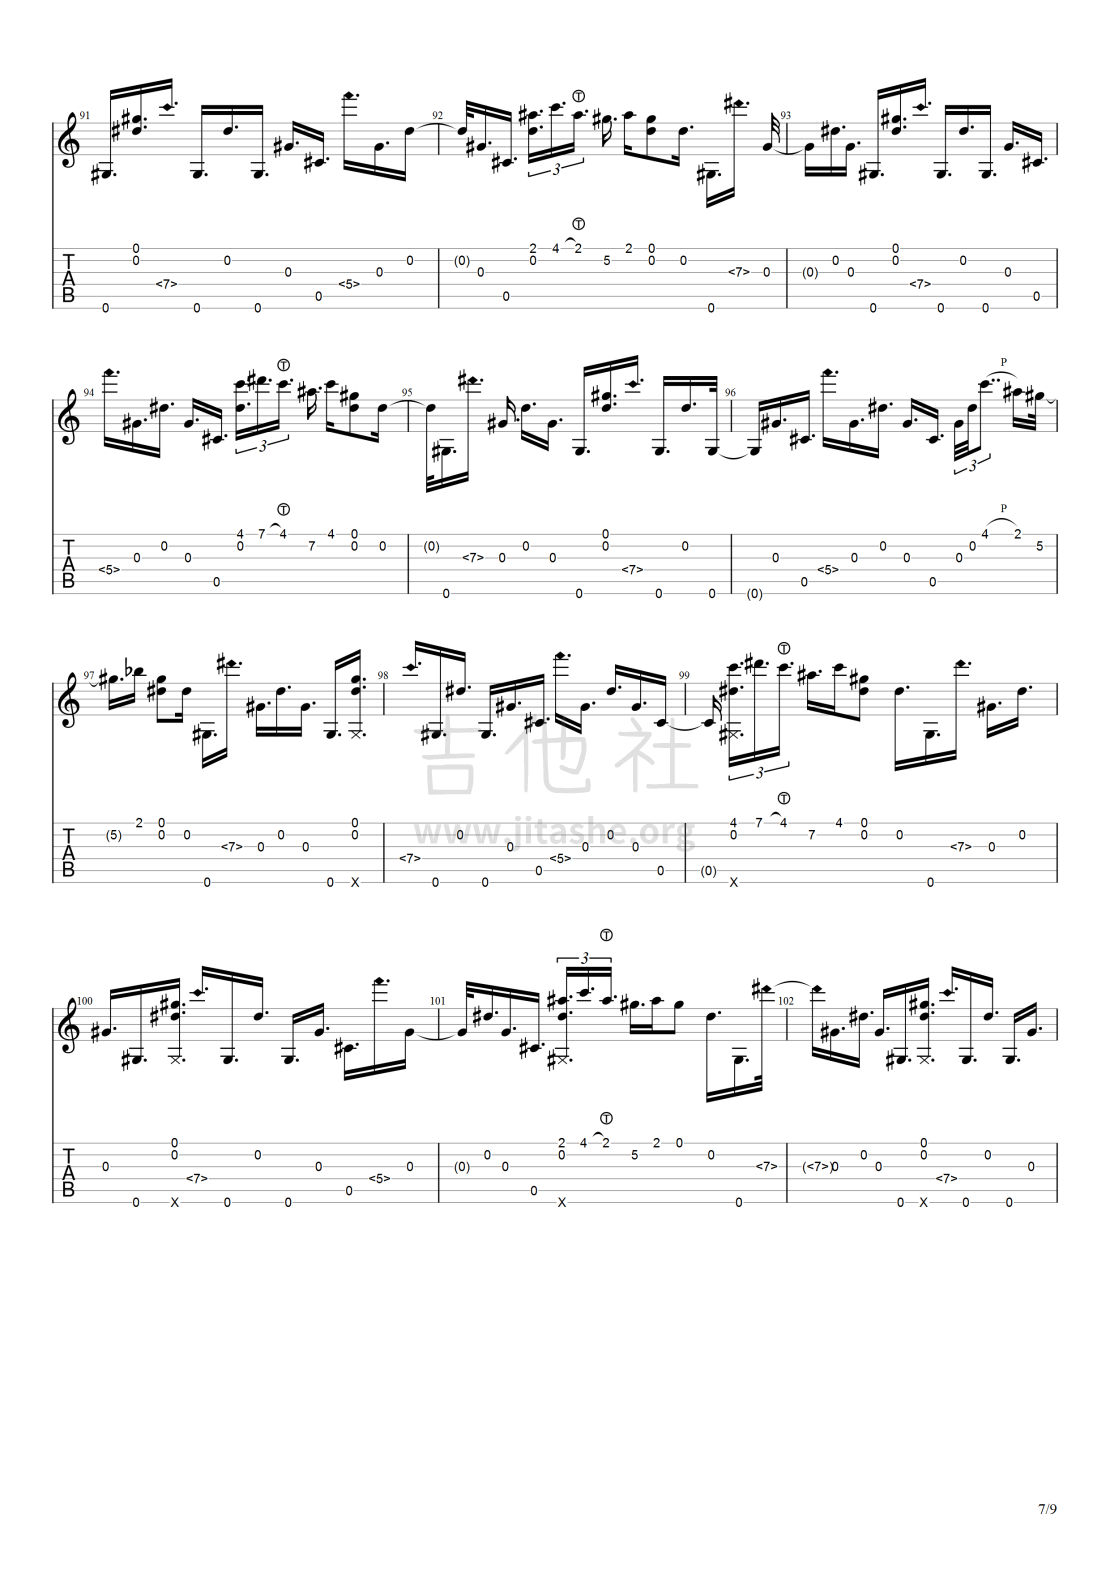 打印:Bell's Harmonicl(gtp谱有问题)吉他谱_Alan Gogoll_钟鸣泛音（图片）#7.png